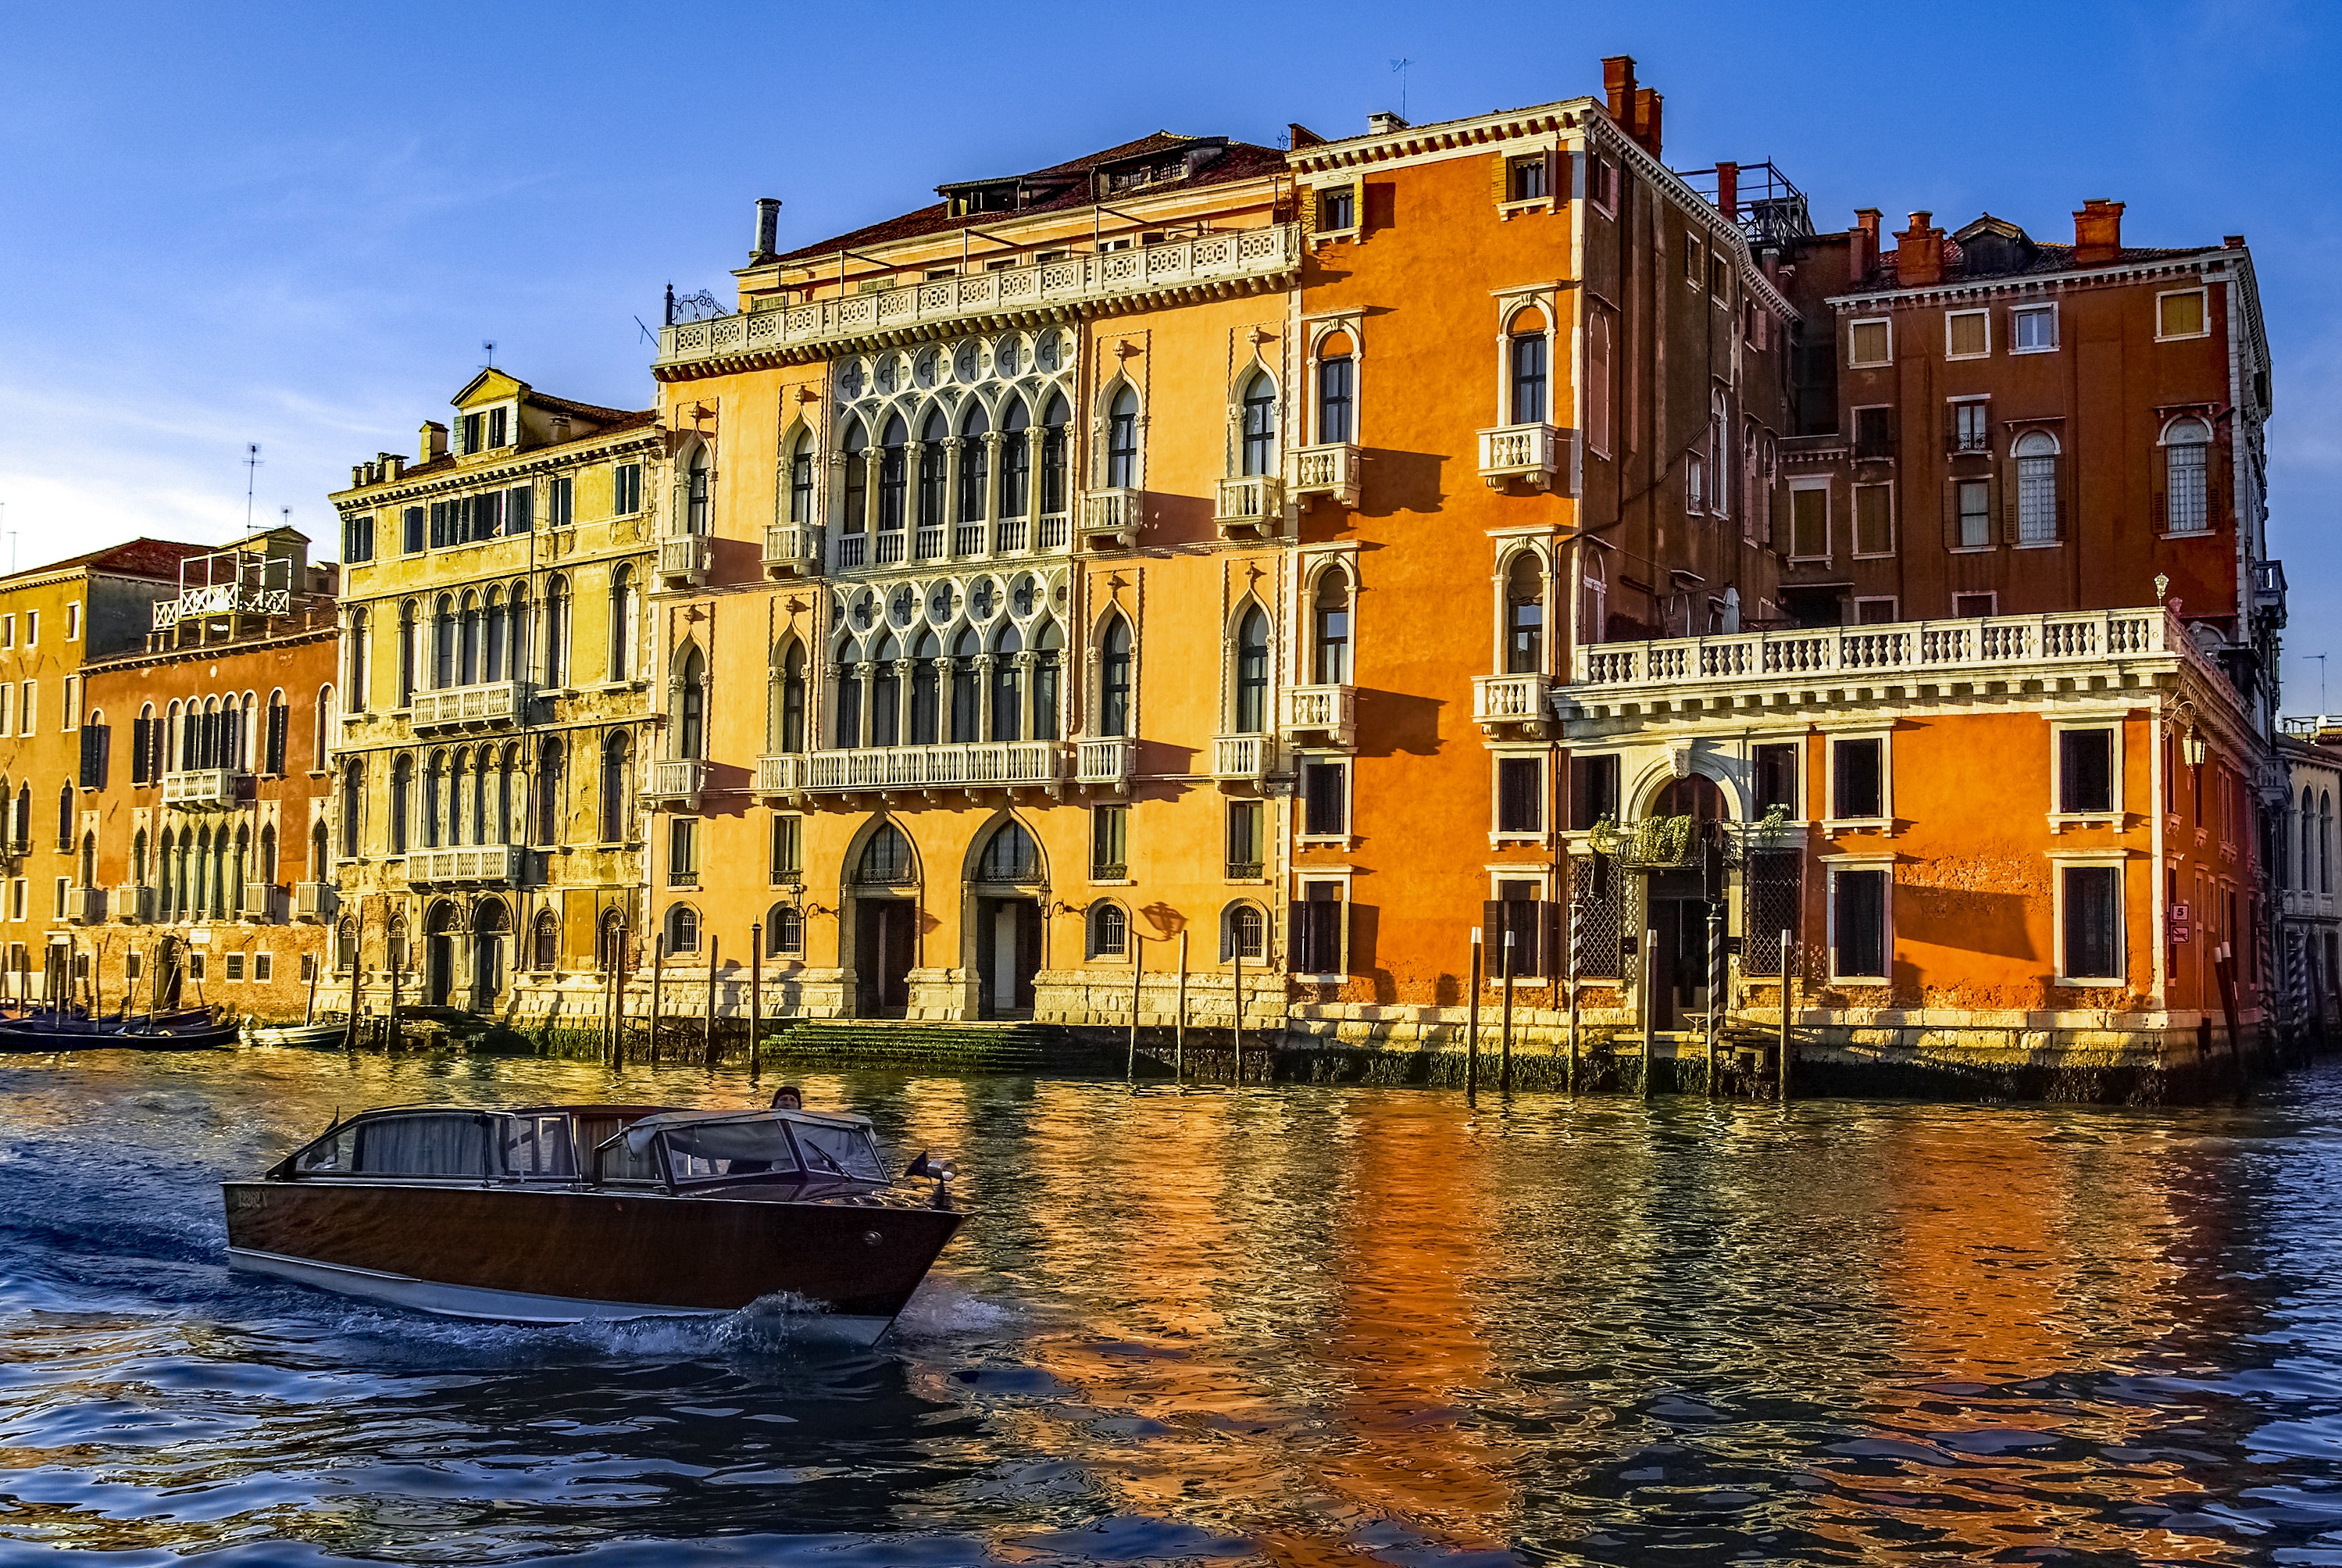 Скачать обои бесплатно Канал, Города, Лодка, Венеция, Италия картинка на рабочий стол ПК